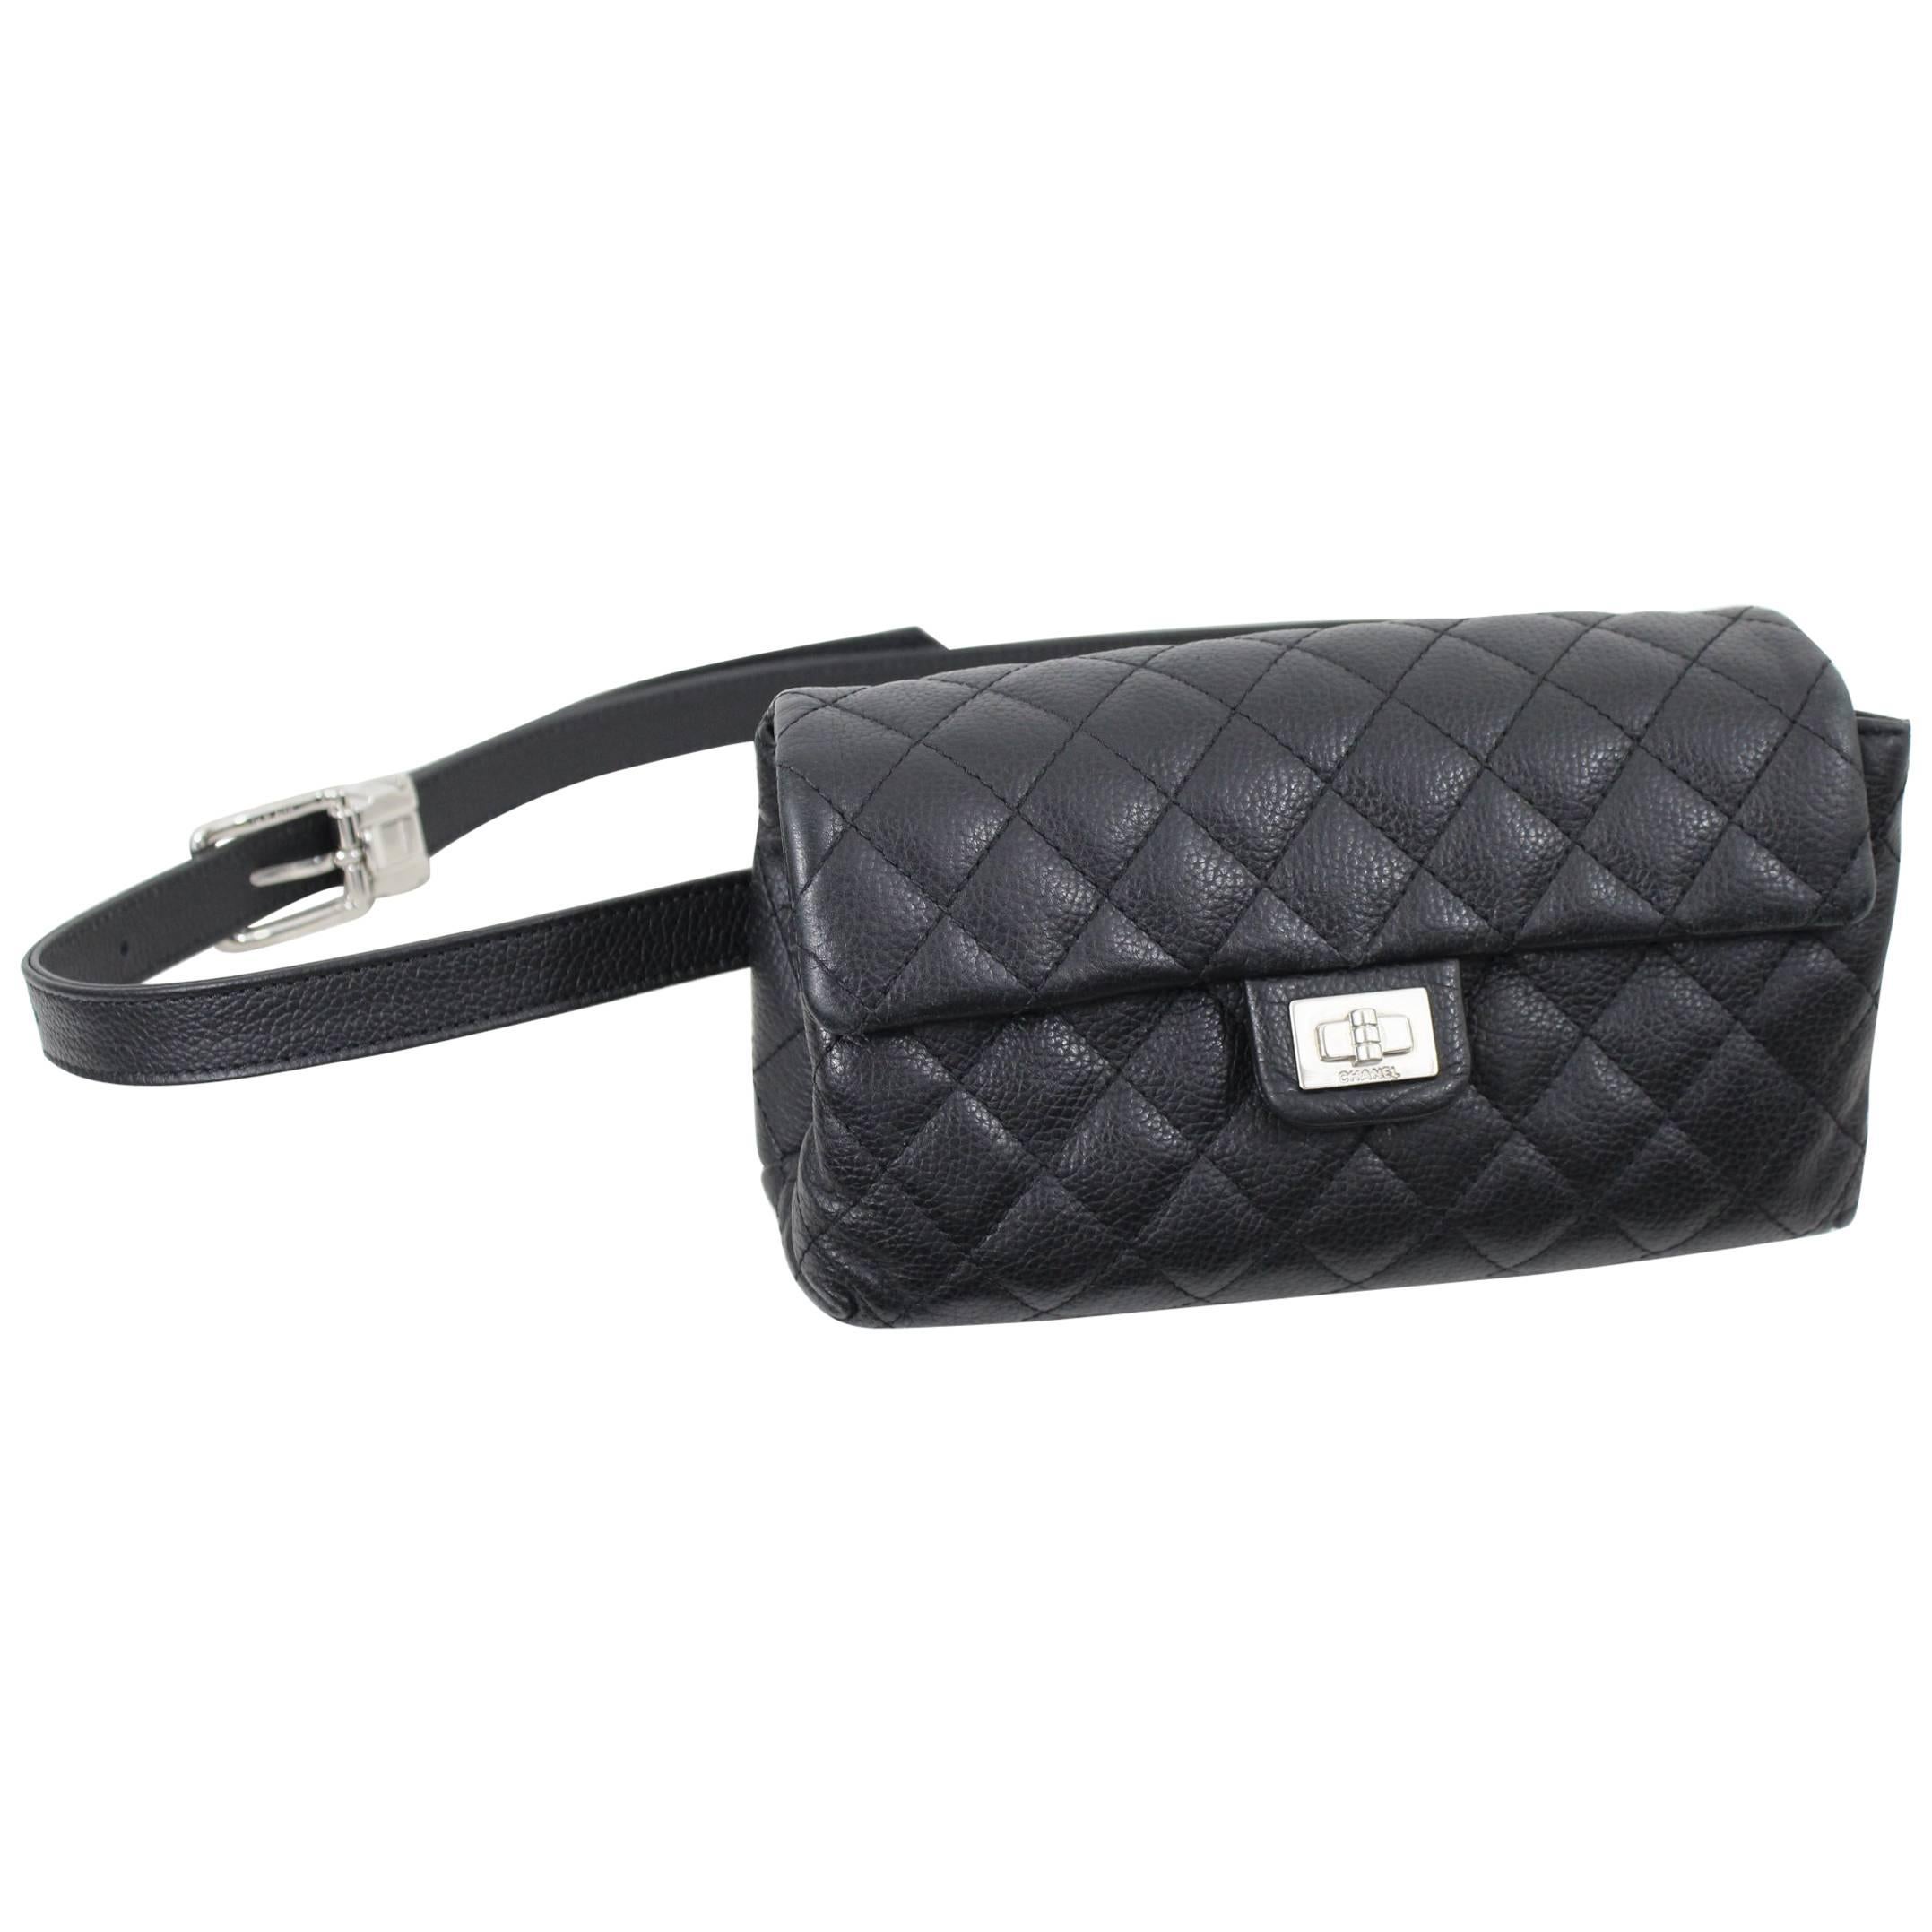 Chanel Uniform Grained Leather 2.55 Beltbag. Adjustable Belt